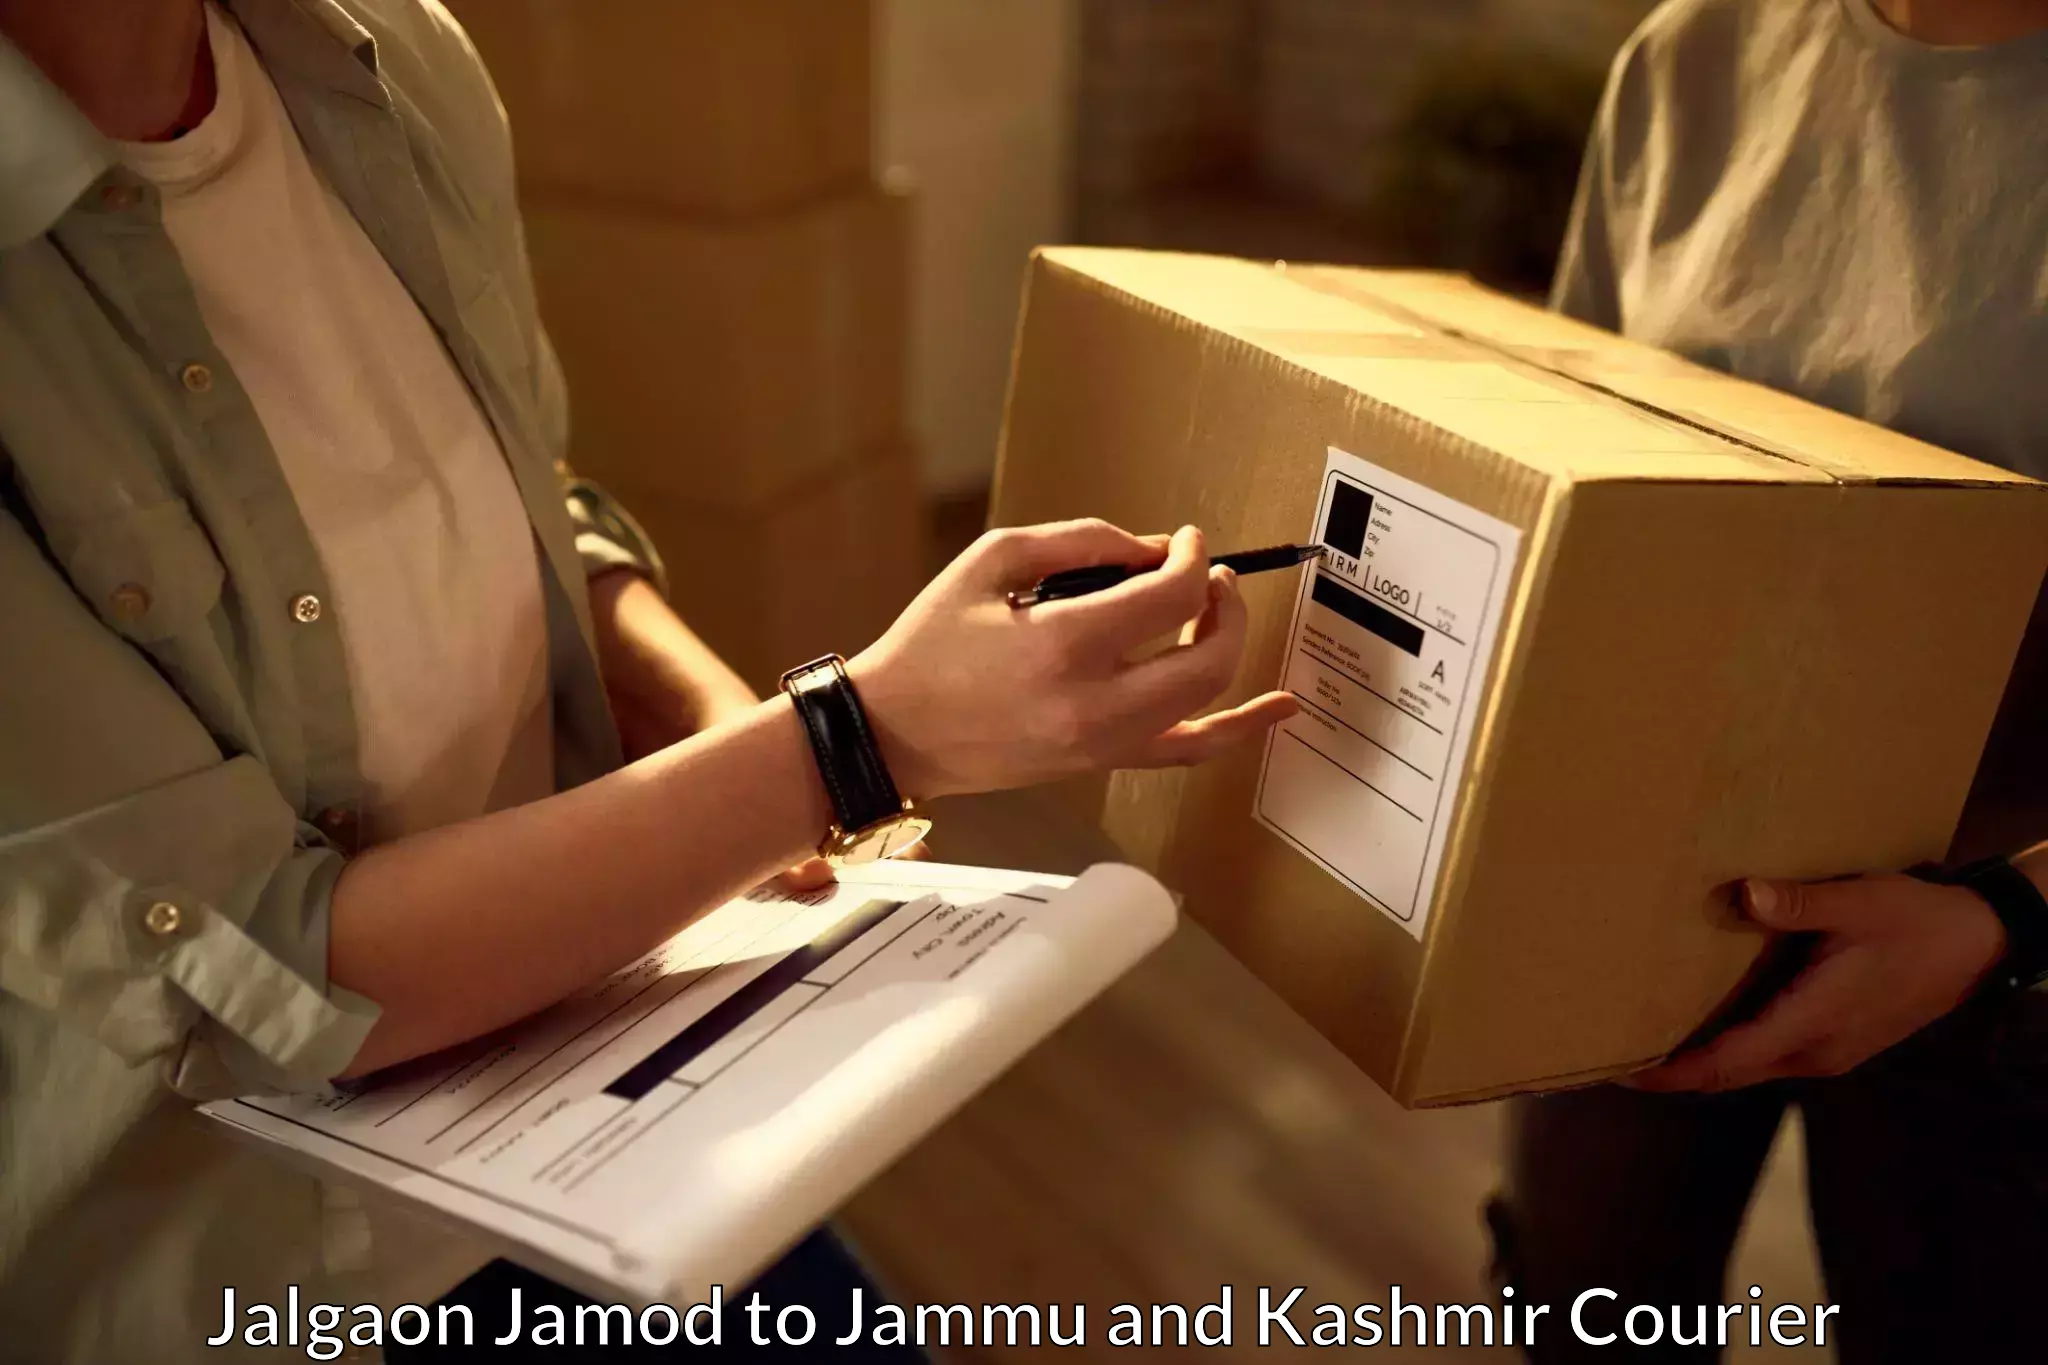 Optimized delivery routes Jalgaon Jamod to Budgam